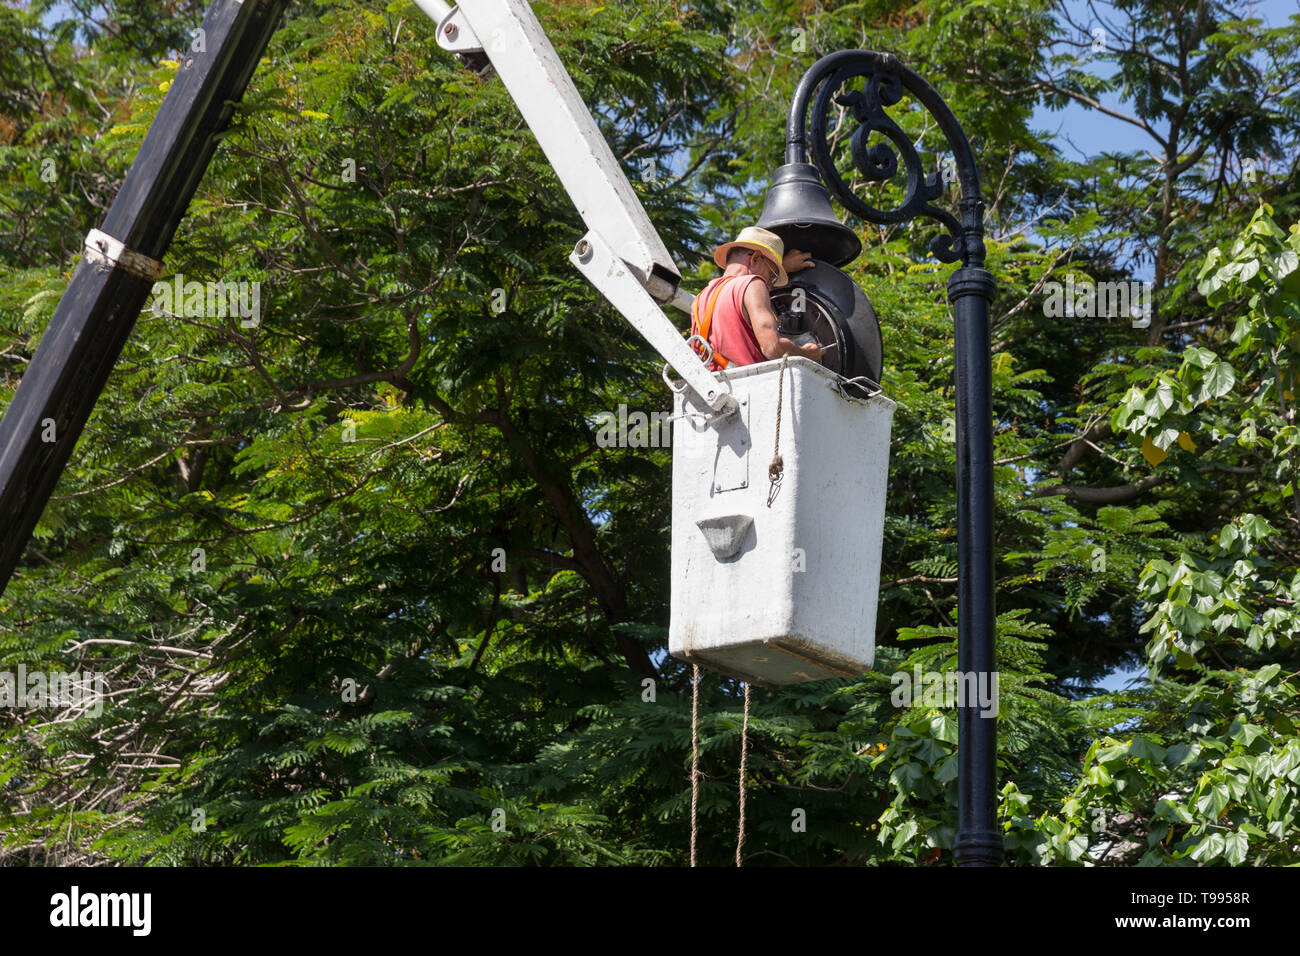 Un lavoratore cubano in un cherry picker piattaforma di lavoro aerea effettua riparazioni e lavori di manutenzione su impianti di illuminazione stradale a l'Avana, Cuba Foto Stock